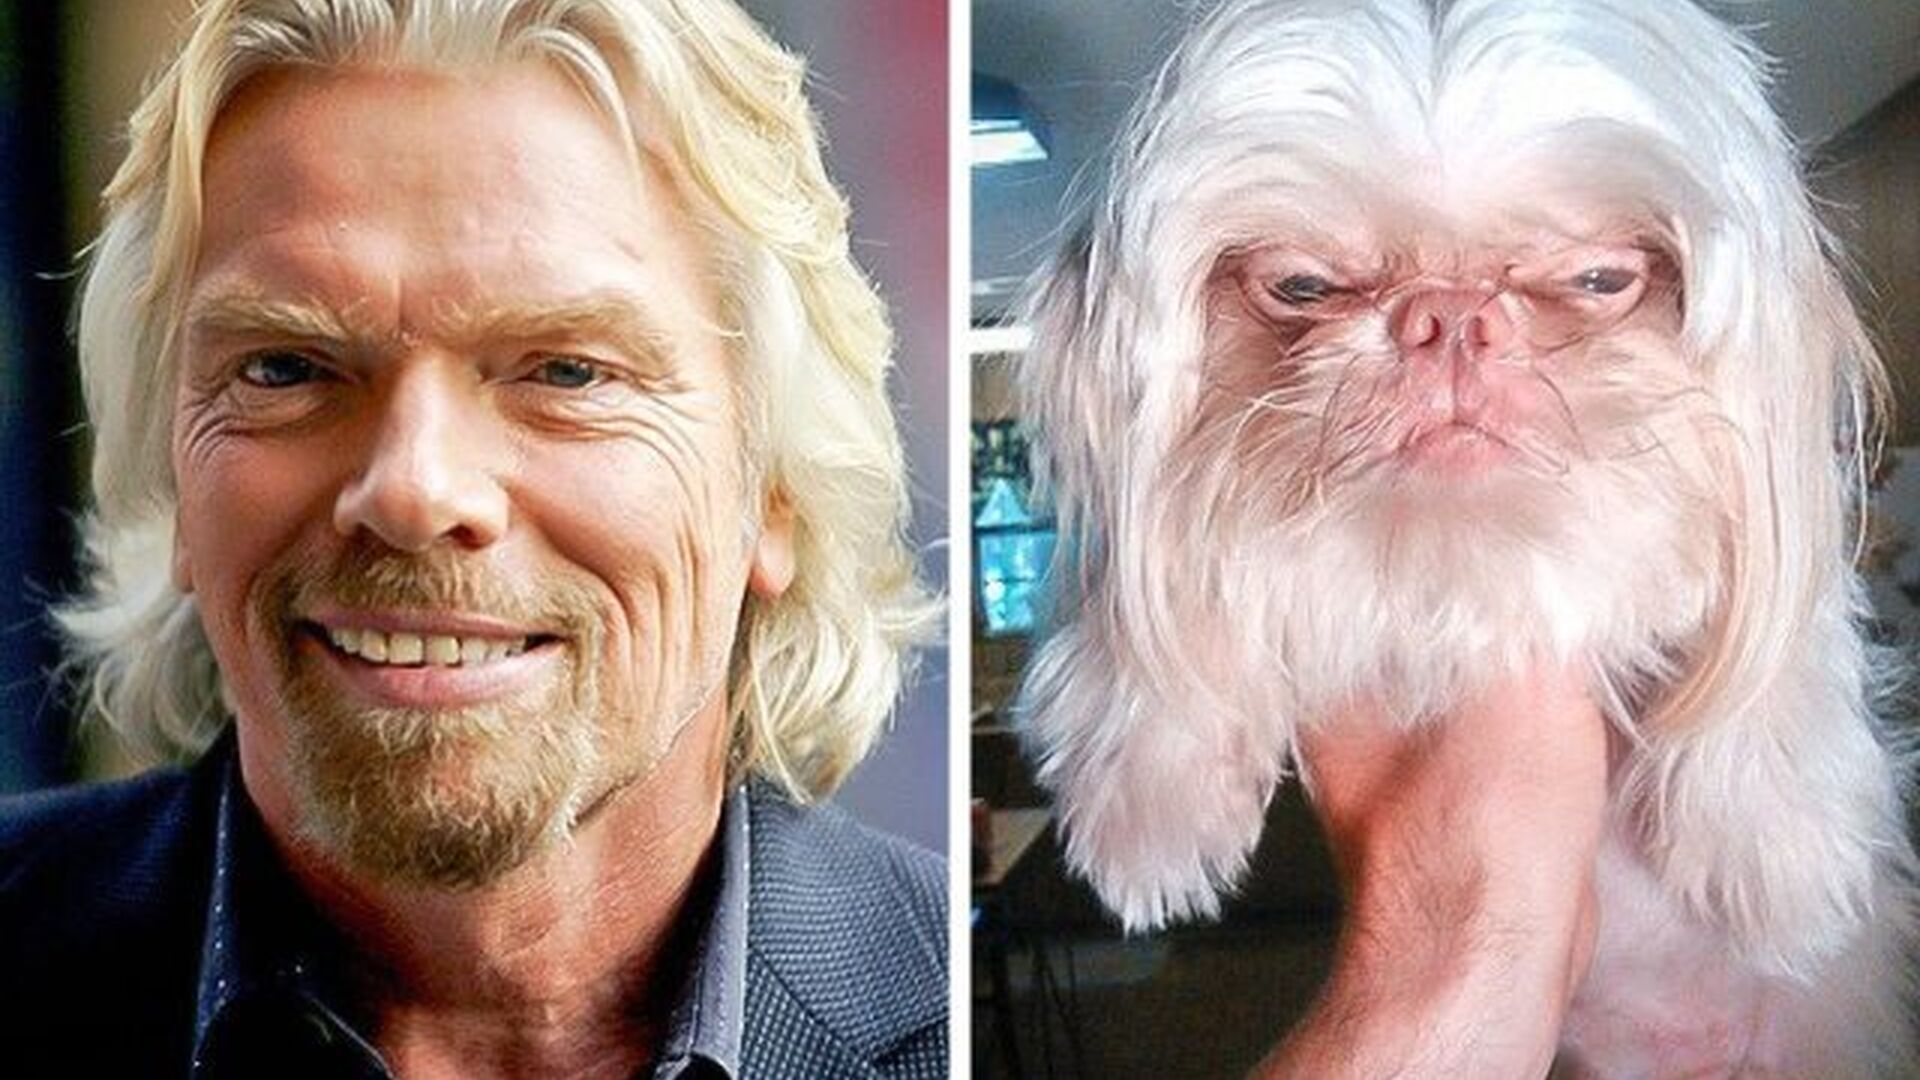 P&oacute;nganle pelo y cuatro patas al multimillonario ingl&eacute;s Richard Branson, y resulta este perro.